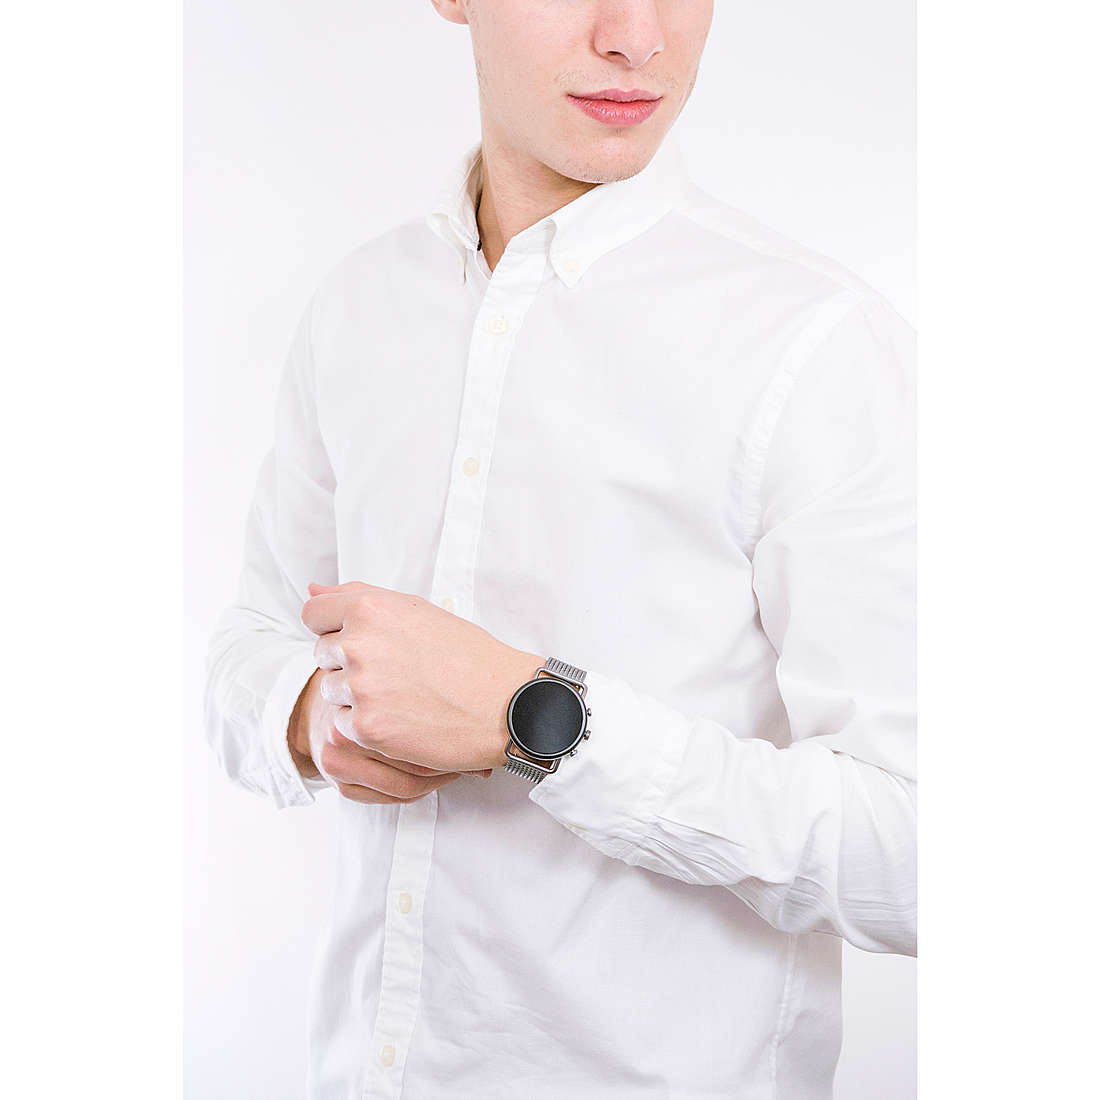 Skagen Smartwatches Spring 2020 man SKT5200 wearing